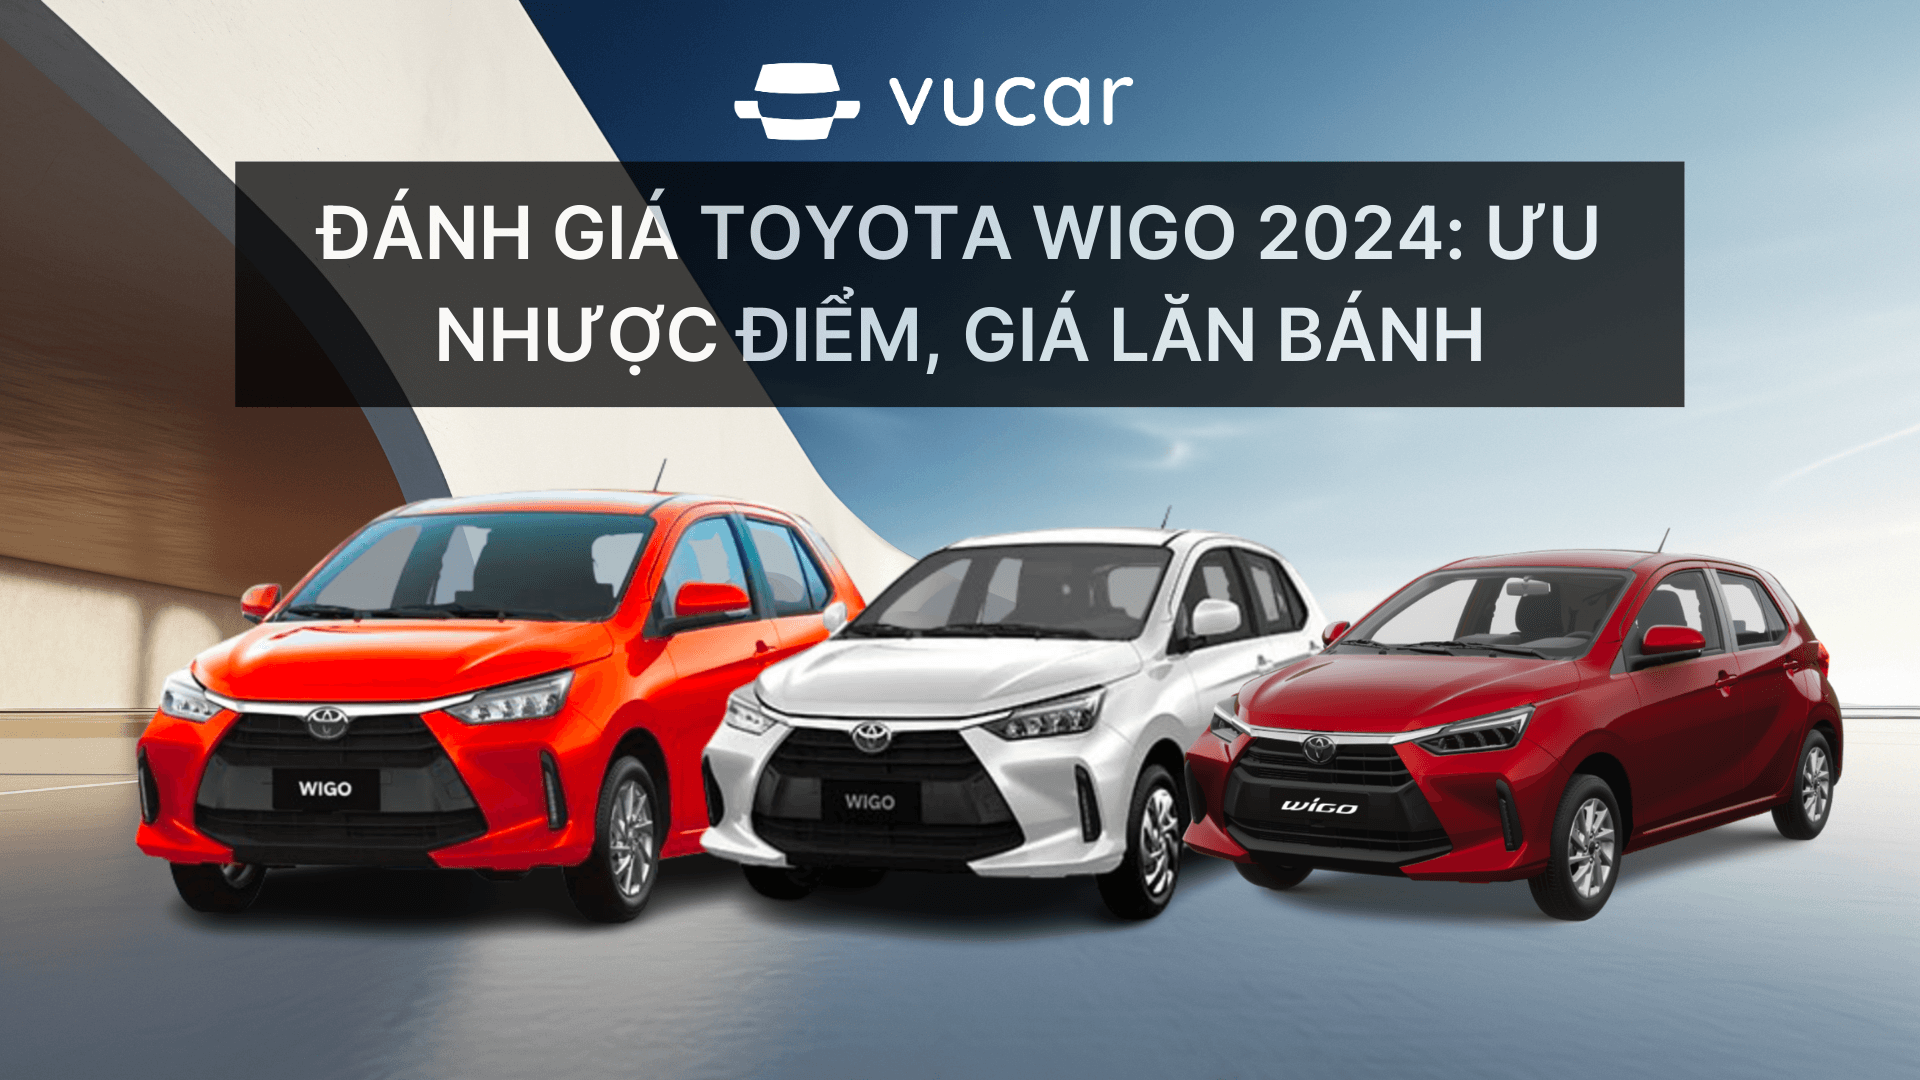 Đánh giá Toyota Wigo 2024 Ưu nhược điểm, giá lăn bánh.png